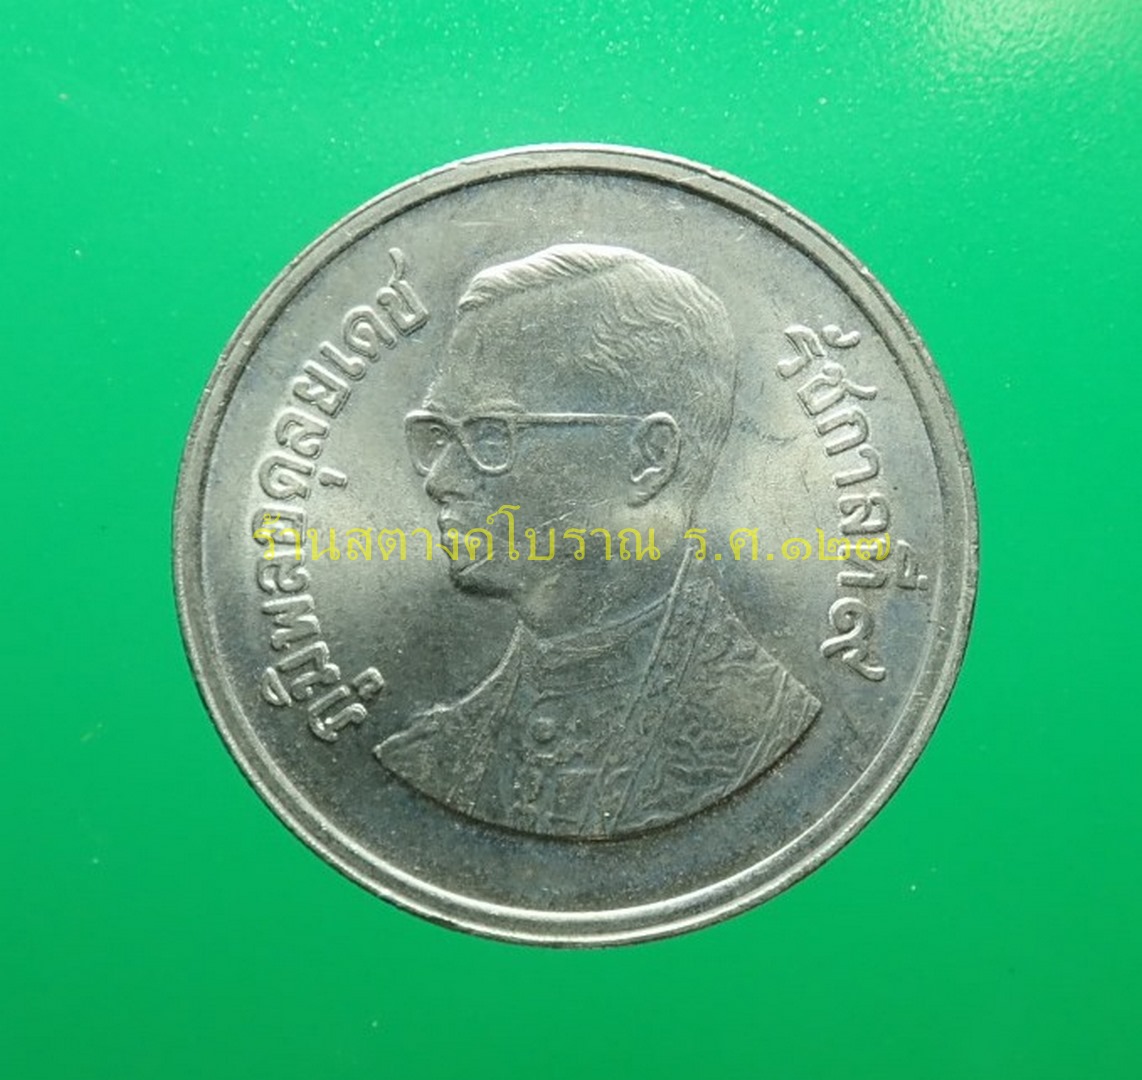 เหรียญกษาปณ์หมุนเวียน พระบรมรูป - ครุฑพ่าห์ ครุฑเอียง พ.ศ. 2525  เนื้อนิกเกิล ราคาหน้าเหรียญ 5 บาท - ร้านสตางค์โบราณ ร.ศ.127 : Inspired By  Lnwshop.Com